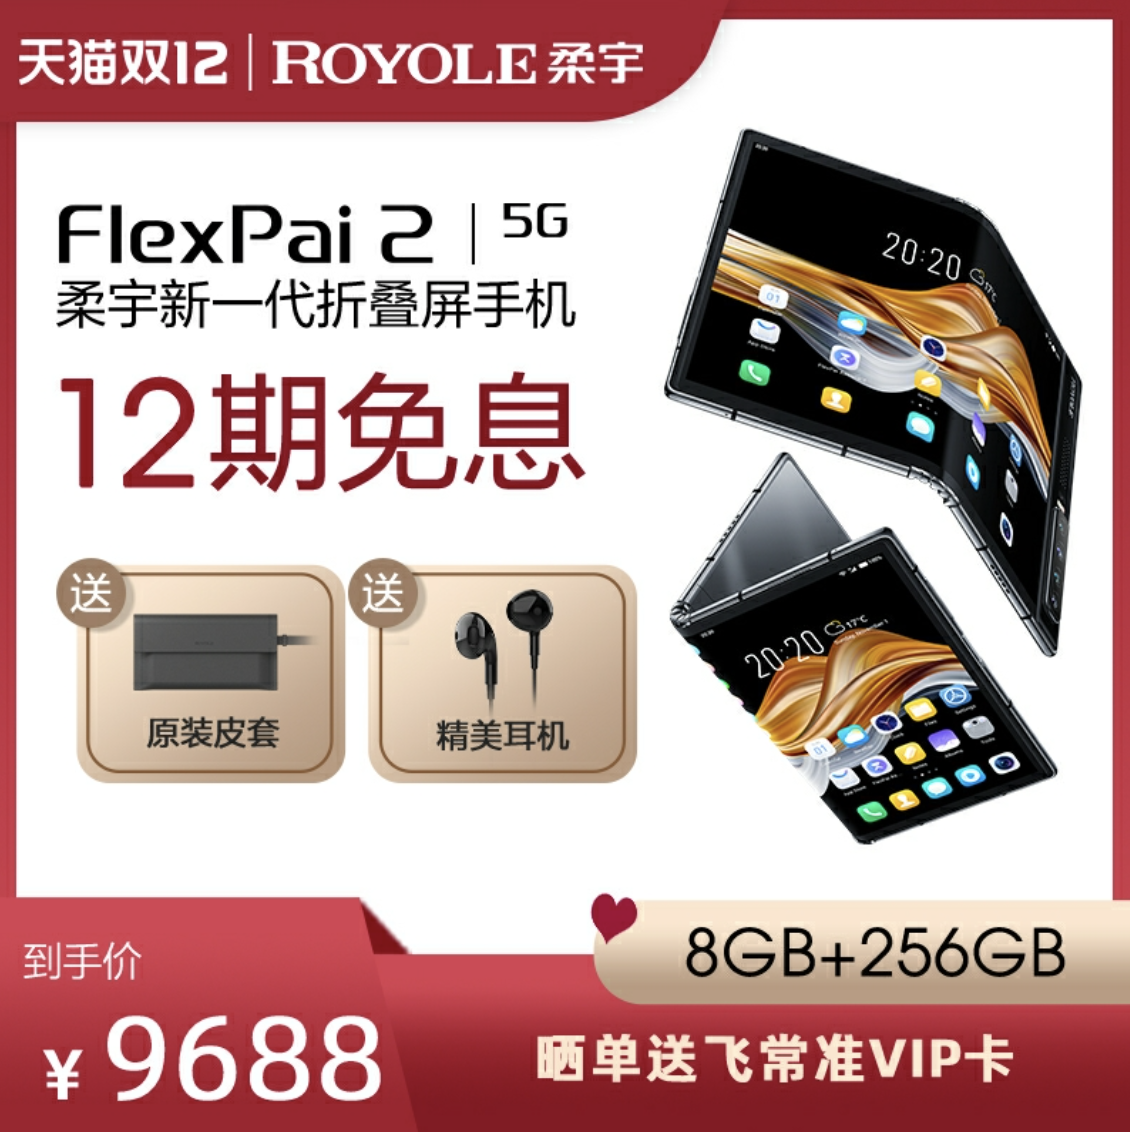 最高性价比的FlexPai 2再推优惠 双十二成最佳入手时机 智能公会